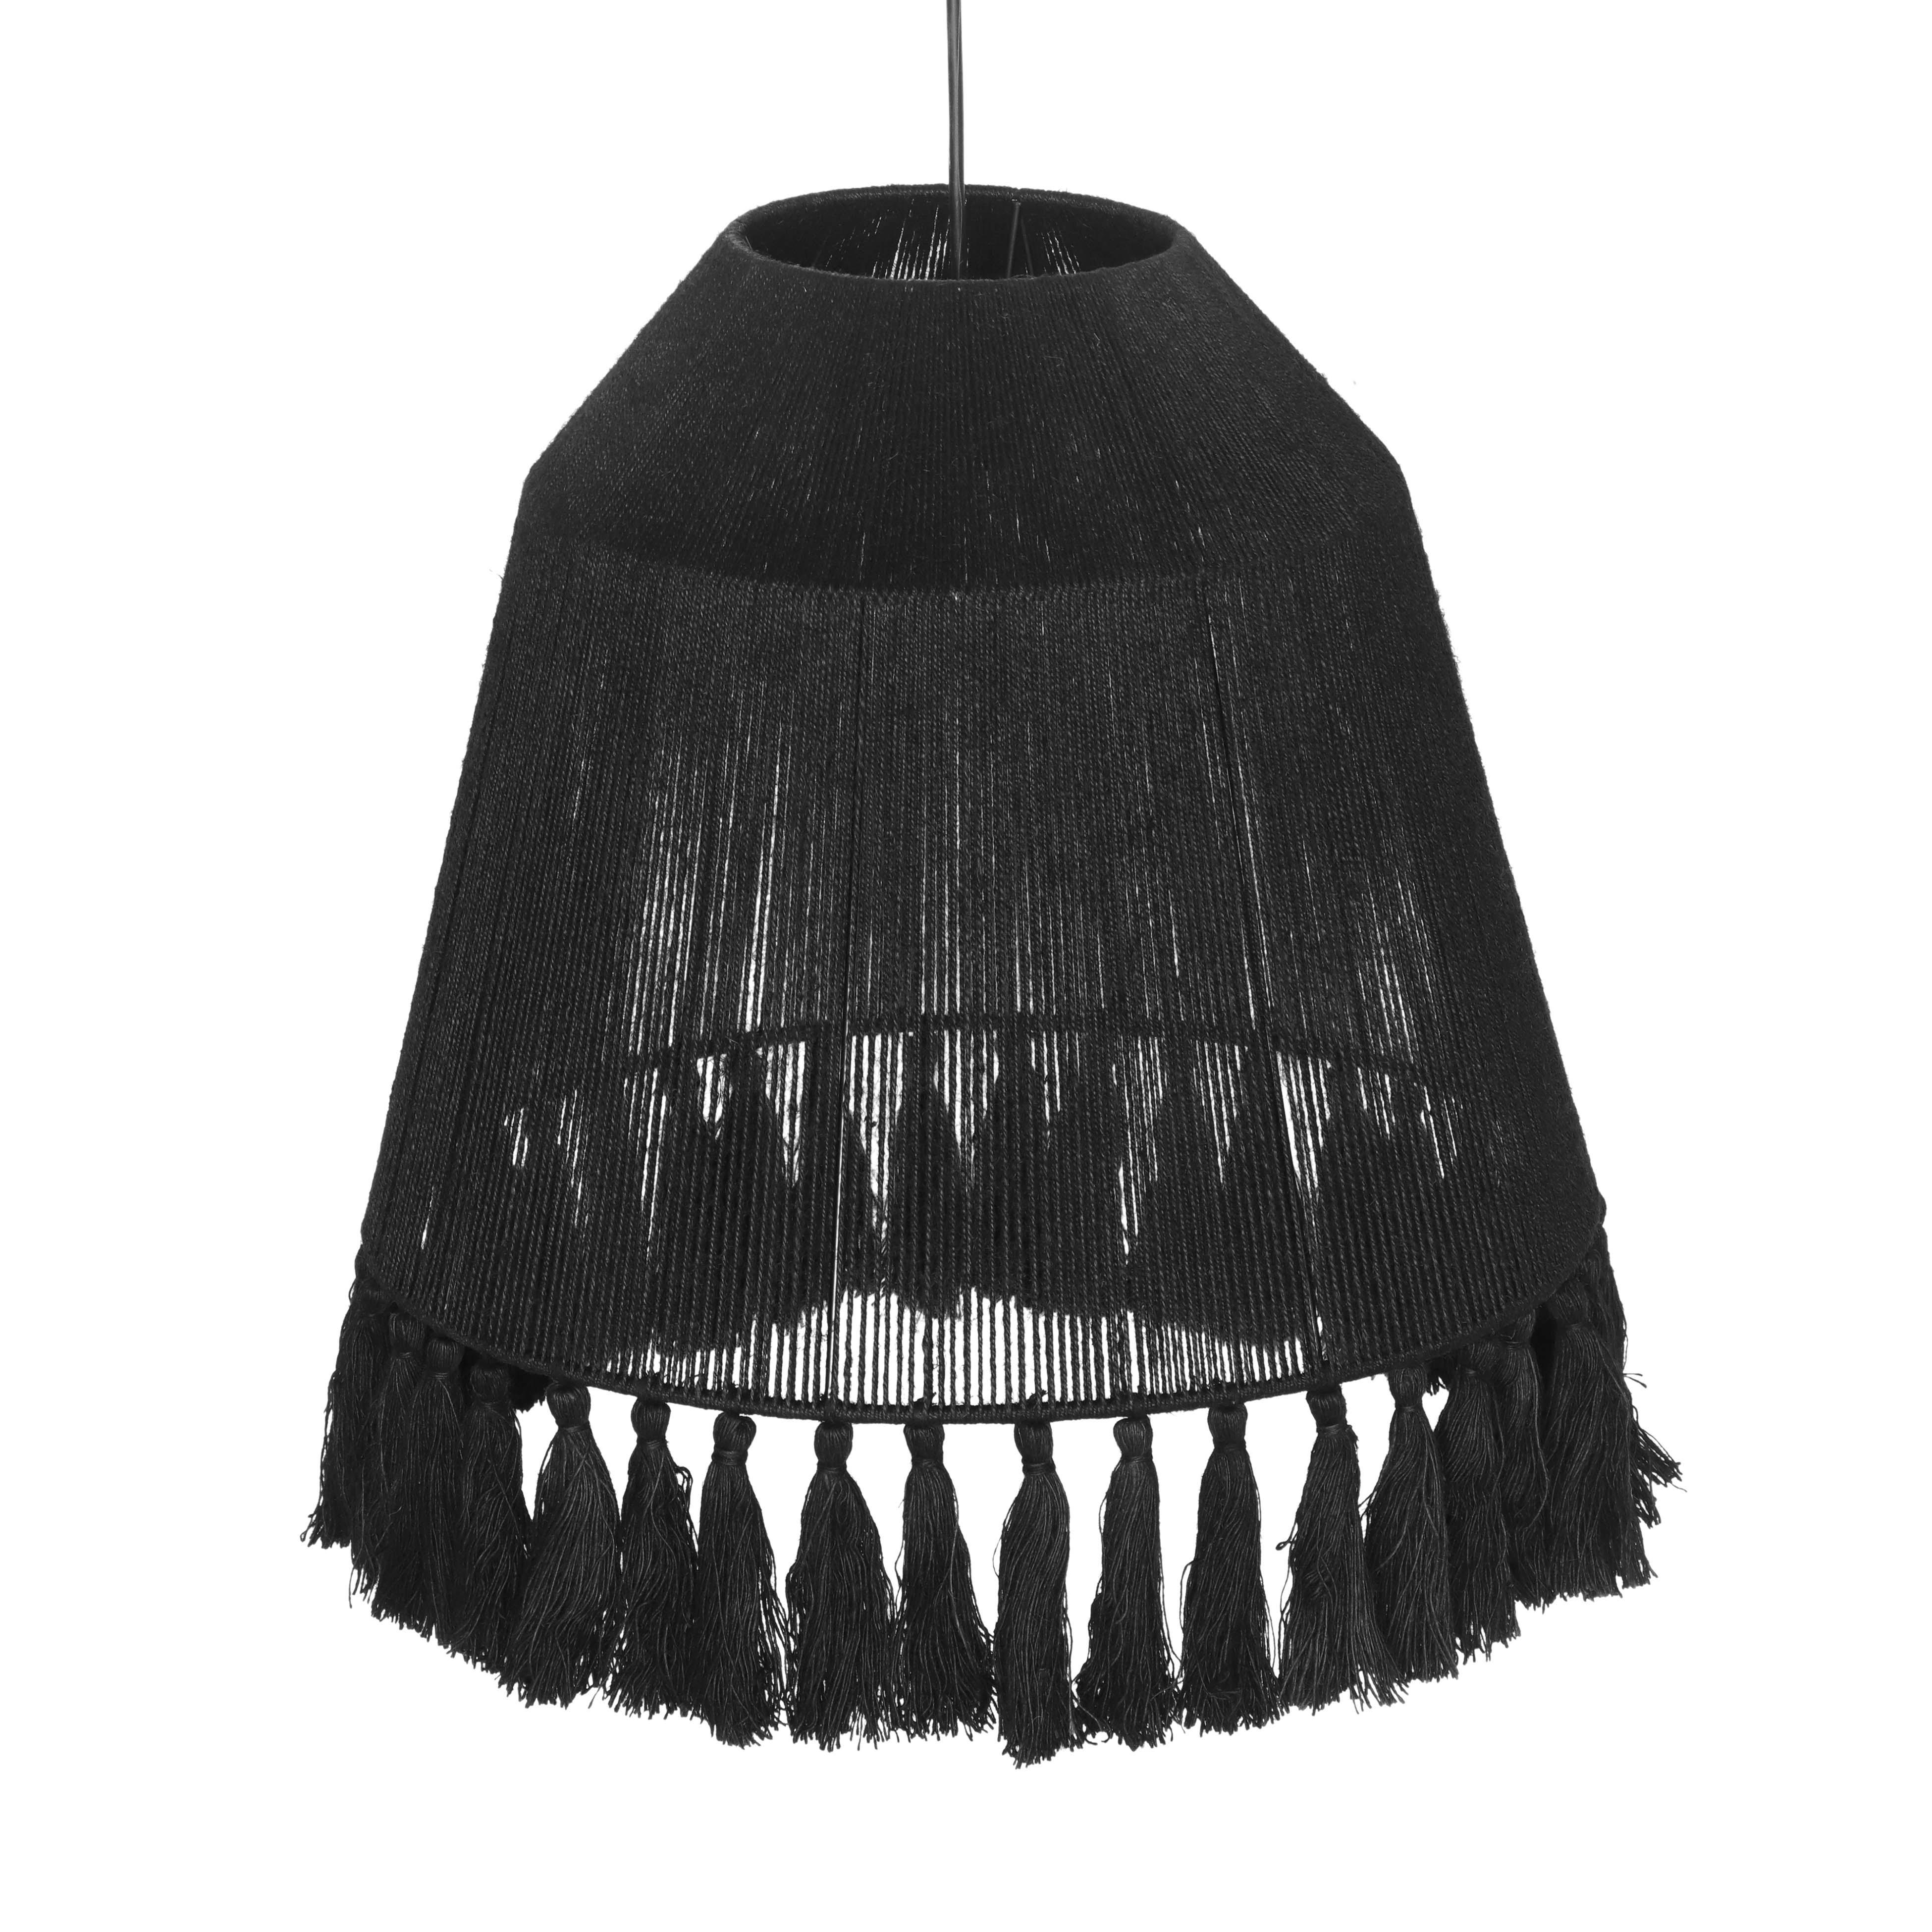 Bokaro Black Jute Large Pendant Lamp - Image 2